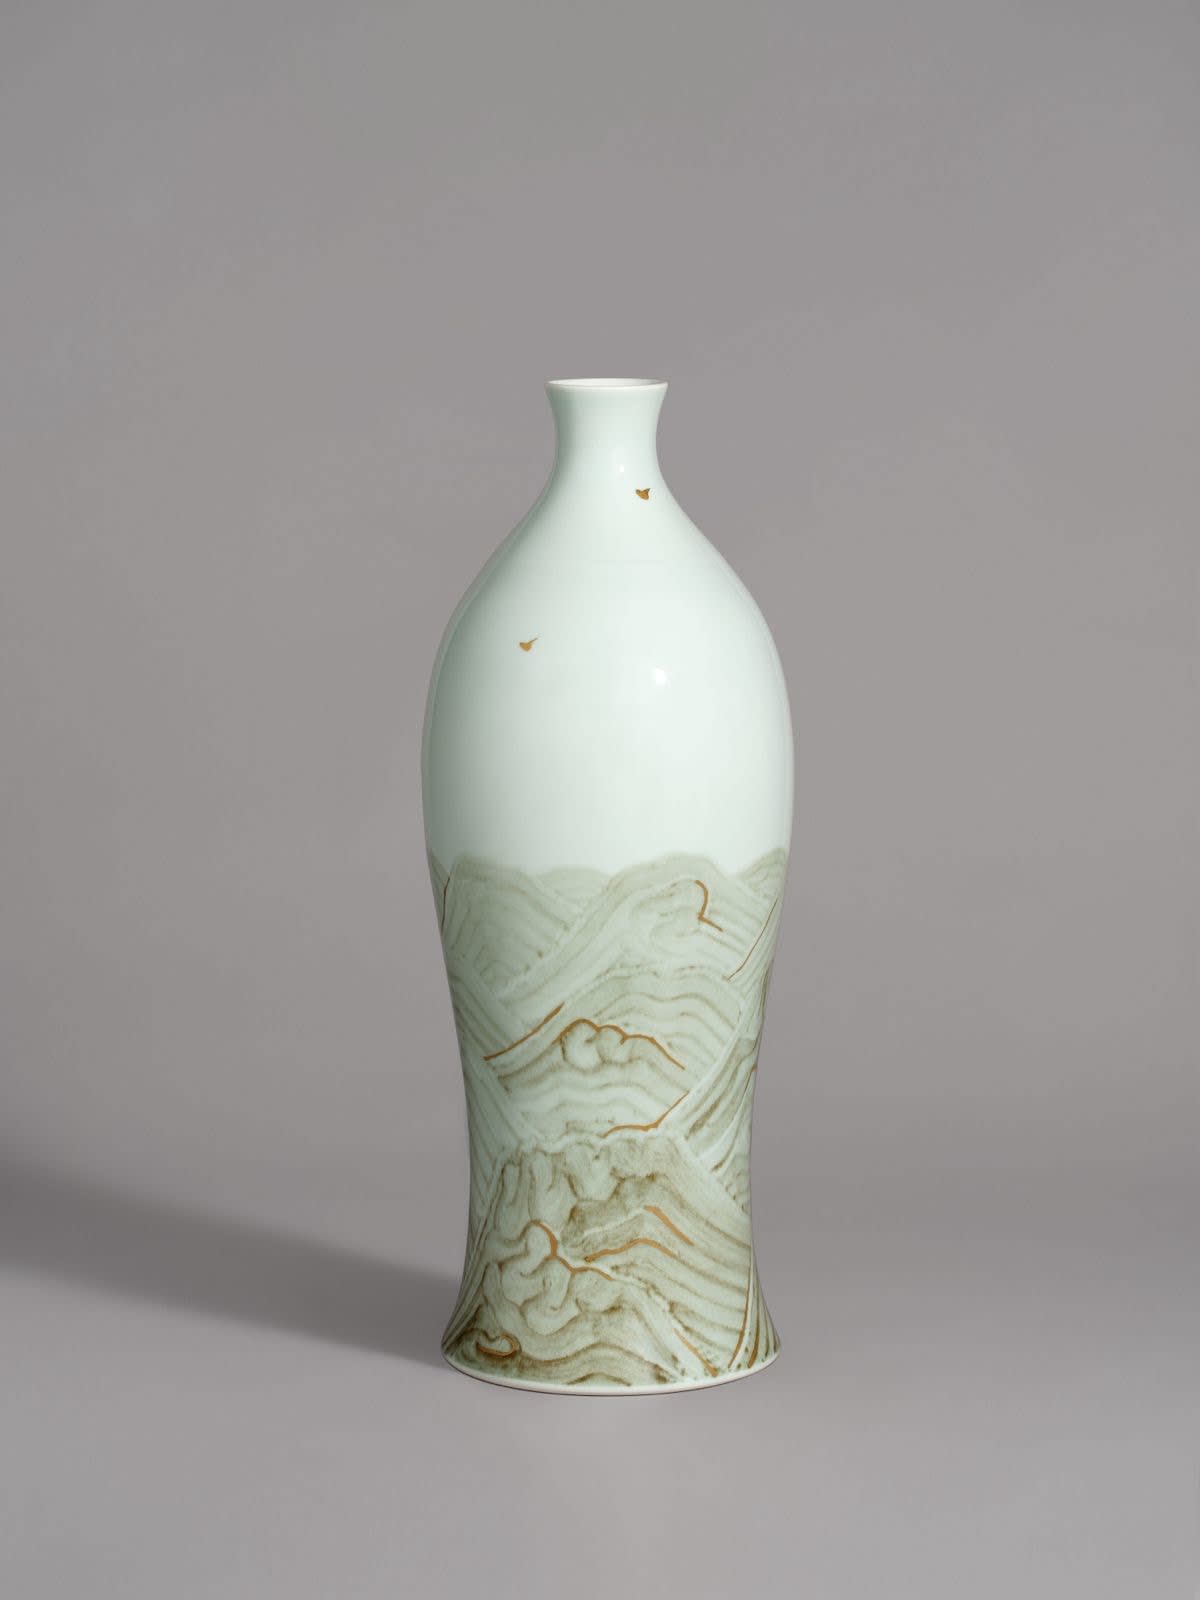 Bai Ming 白 明, A New Plum Vase – Warm Sun on Autumn Mountains《秋山暖陽 (新梅瓶)》, 2018-2019